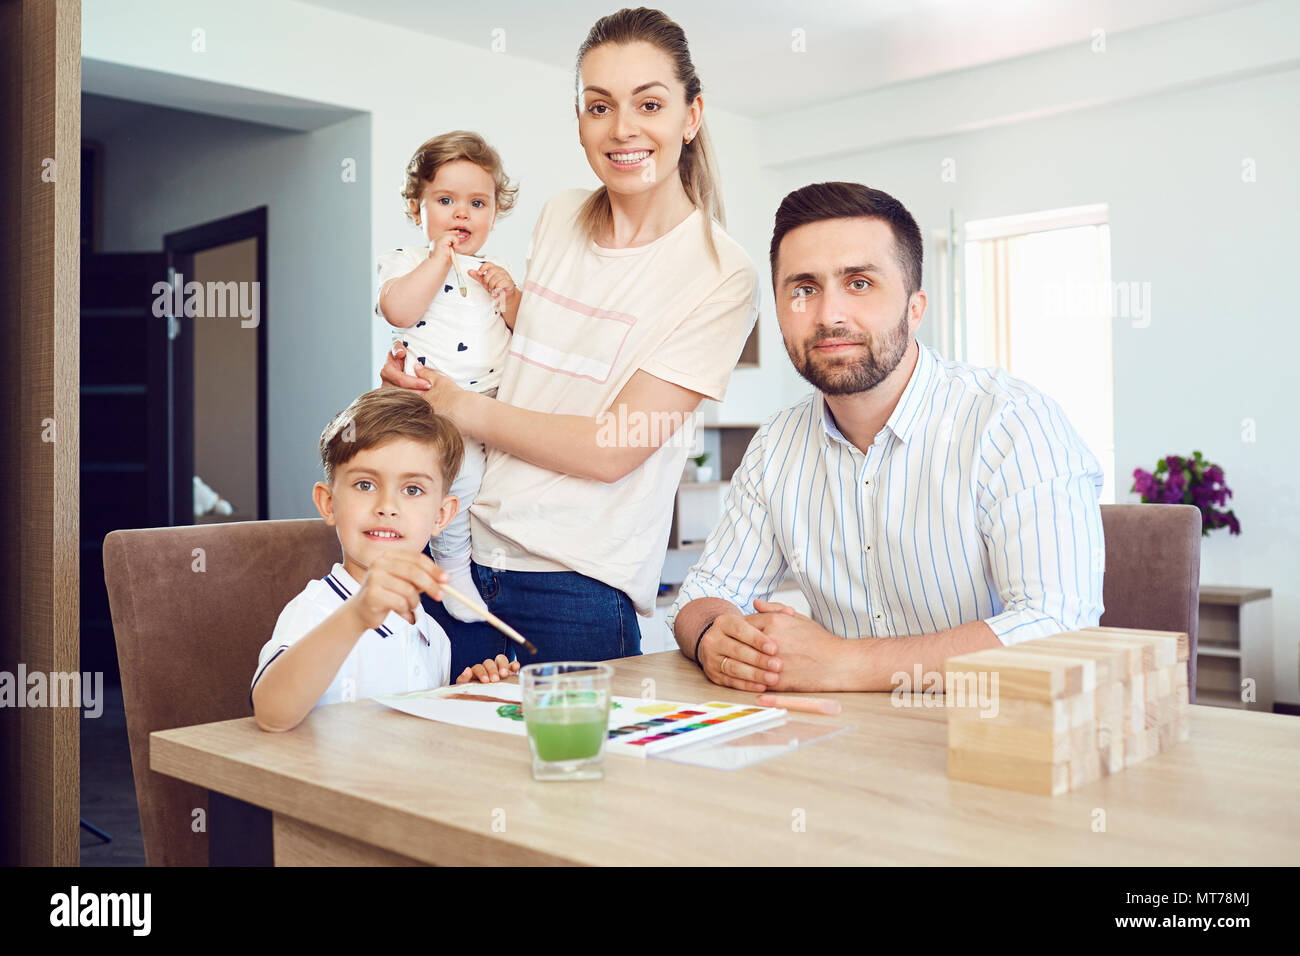 Glückliche Familie zieht malt auf ein Papier auf den Tisch. Stockfoto